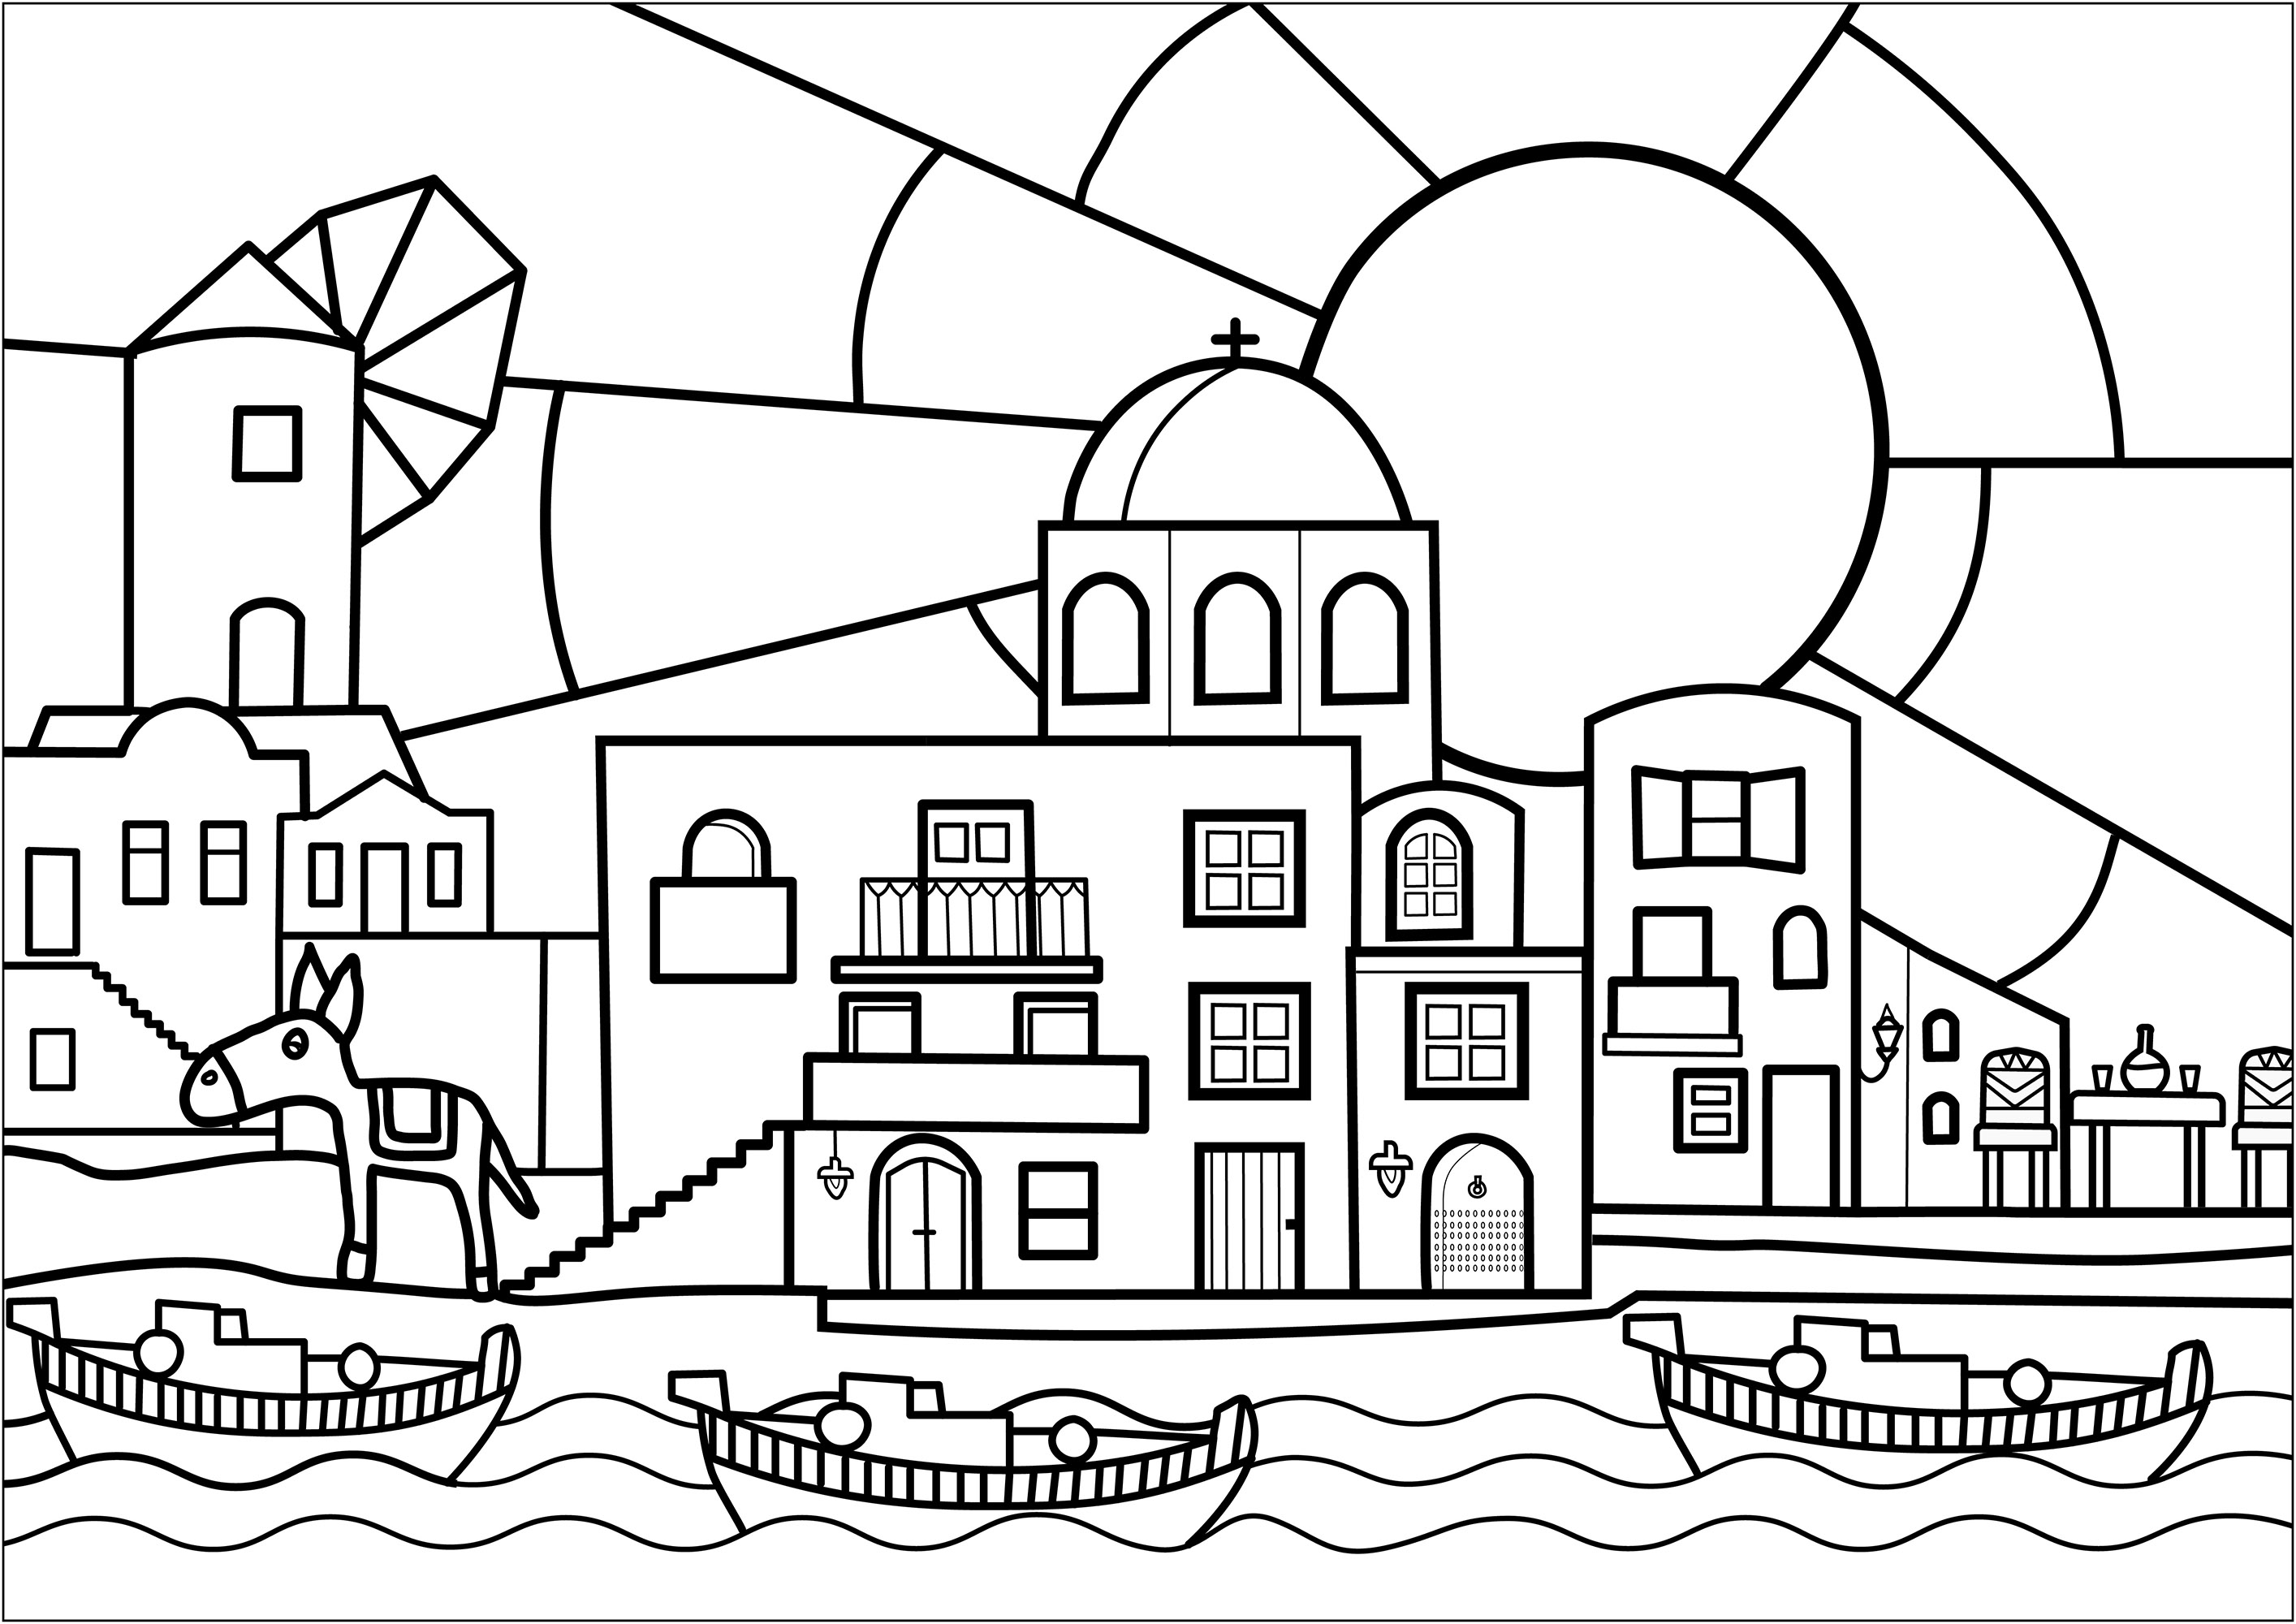 Joli coloriage d'un village en Grèce. Coloriez les habitations, le moulin, l'église de ce village, ainsi que les bateaux sortant du port